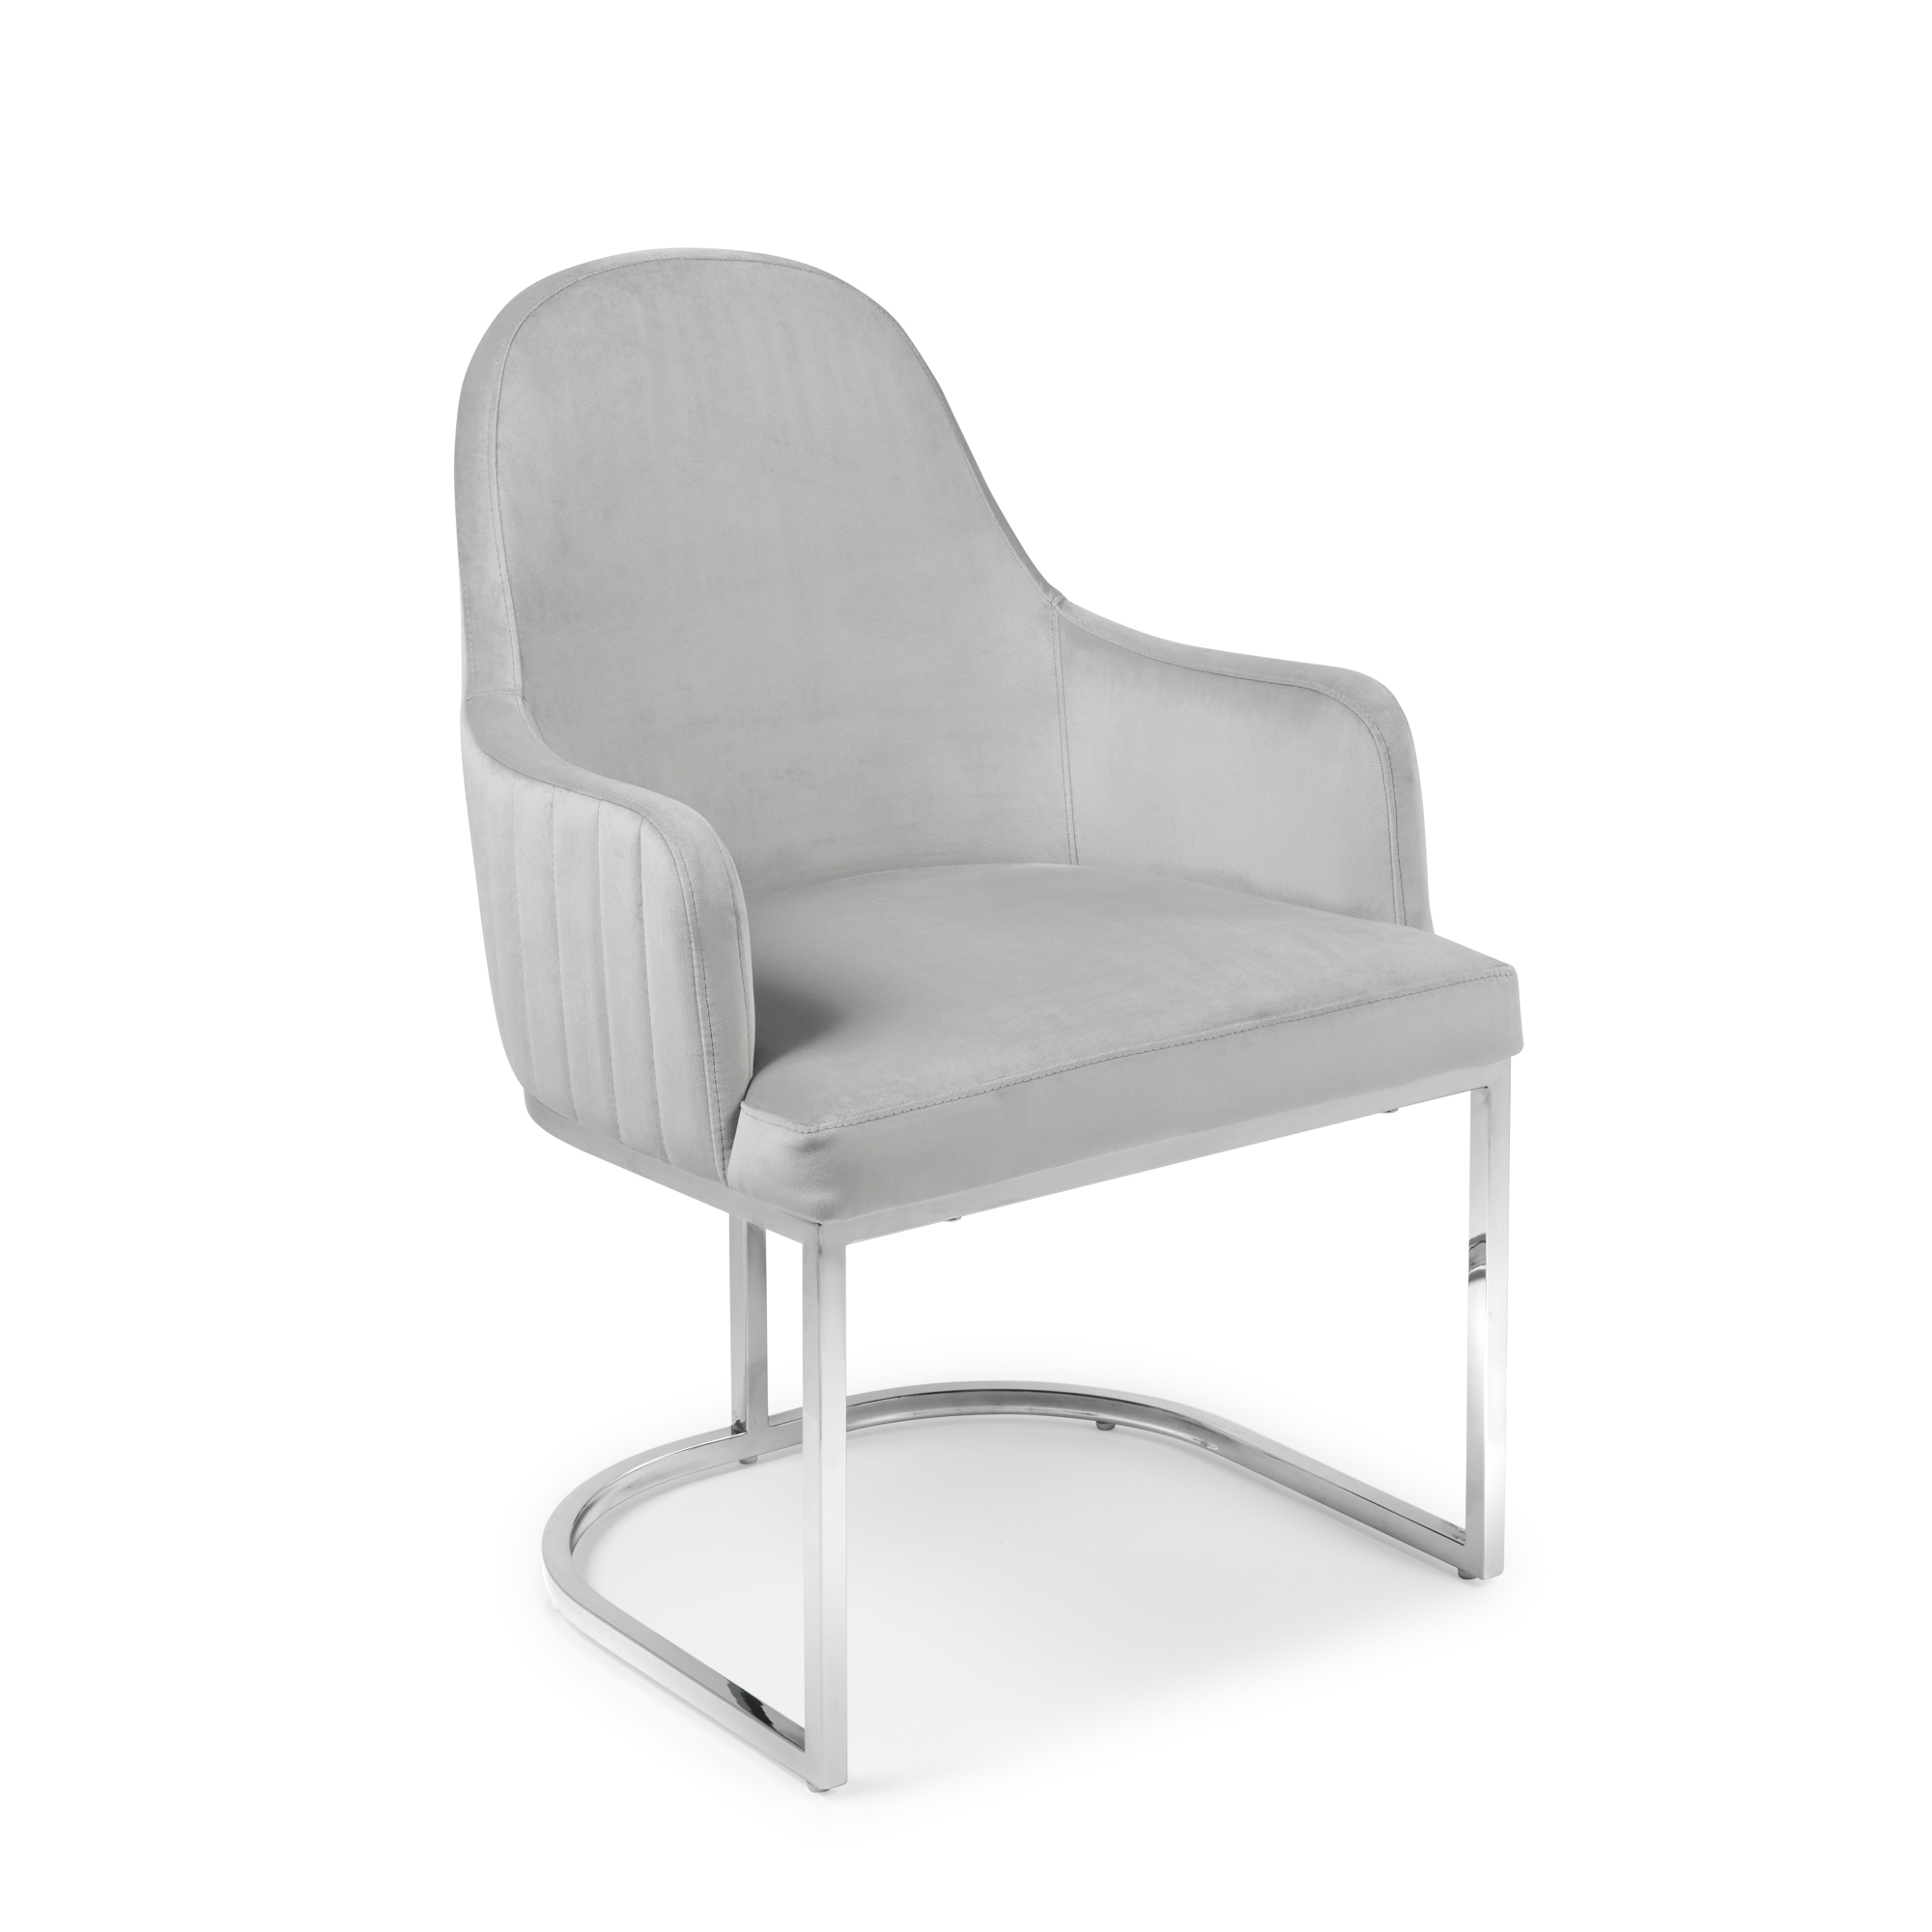 Barcelona Light Grey Brushed Velvet Upholstered Dining Chair – Stainless Steel Base